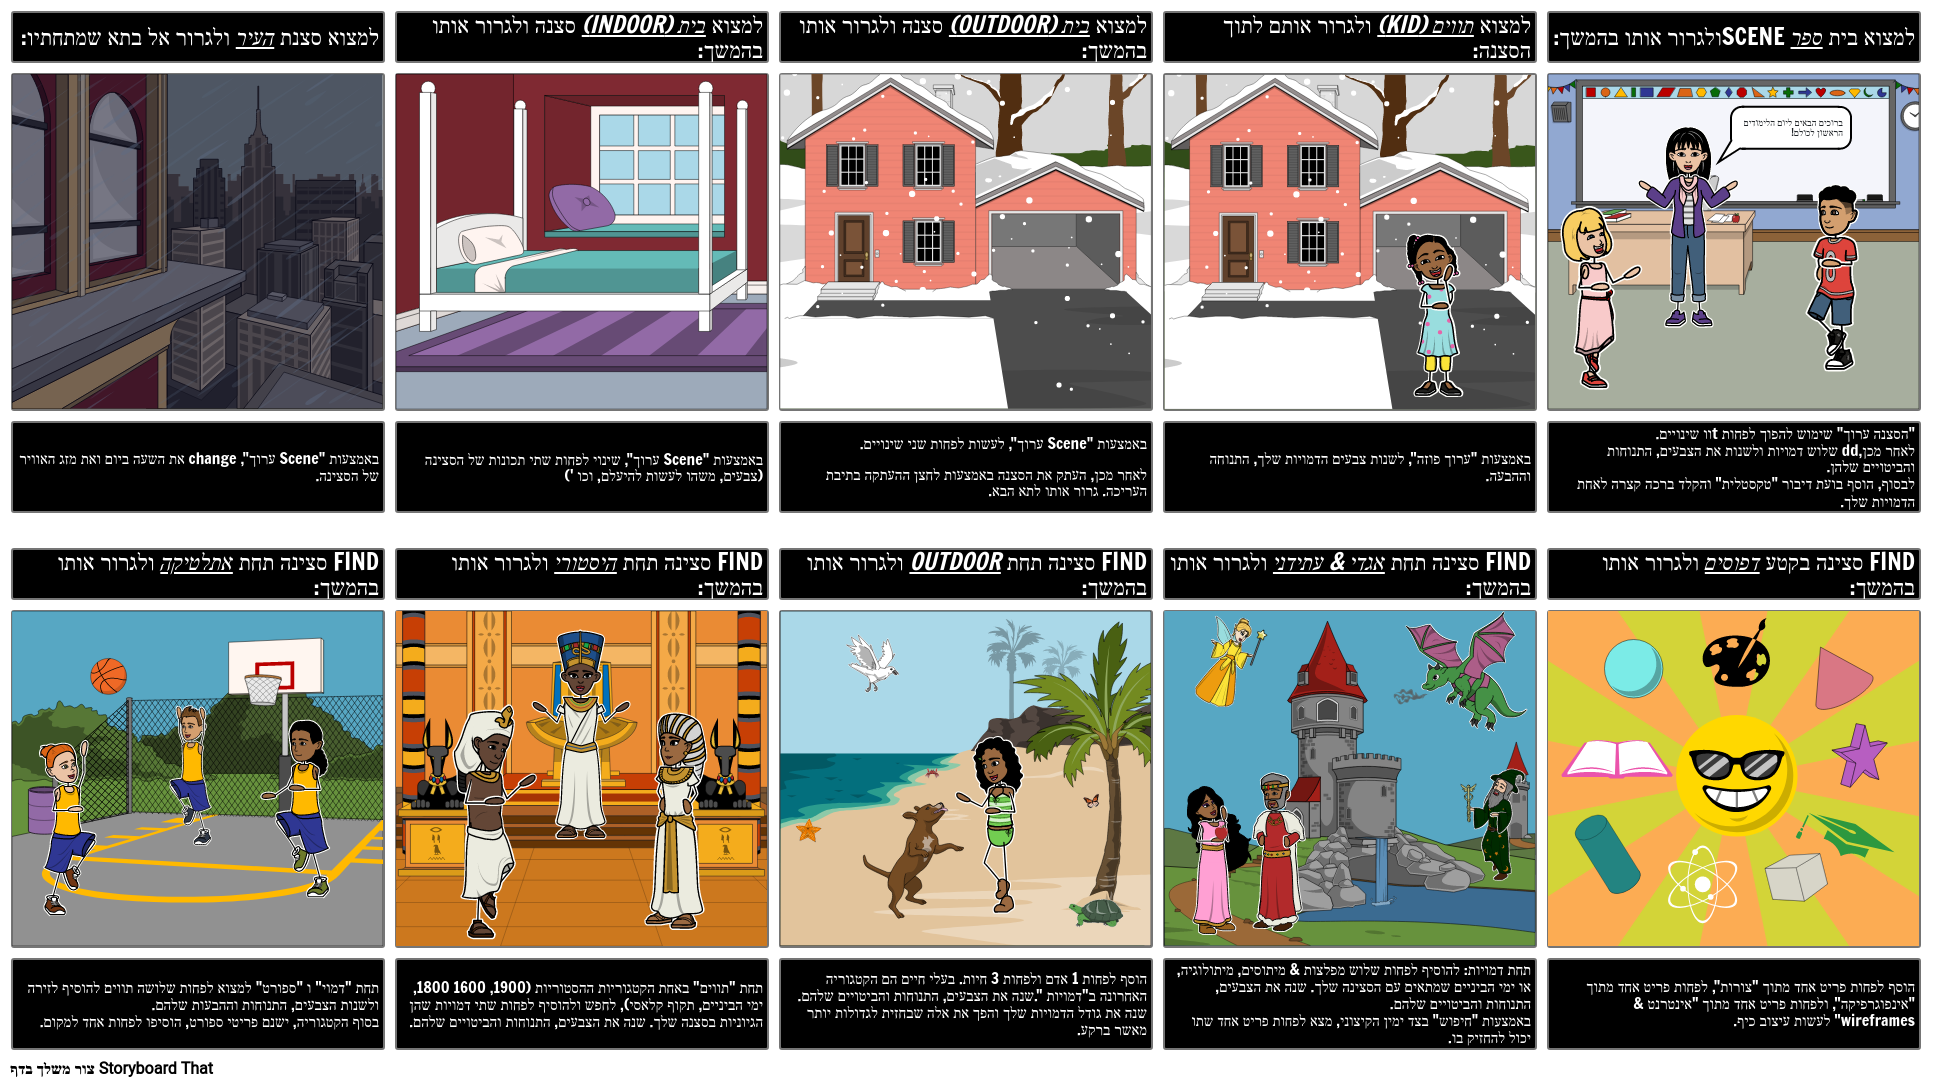 StoryboardThat ההיסטוריה - ציד הנבלות - חקור את הקטגוריות!